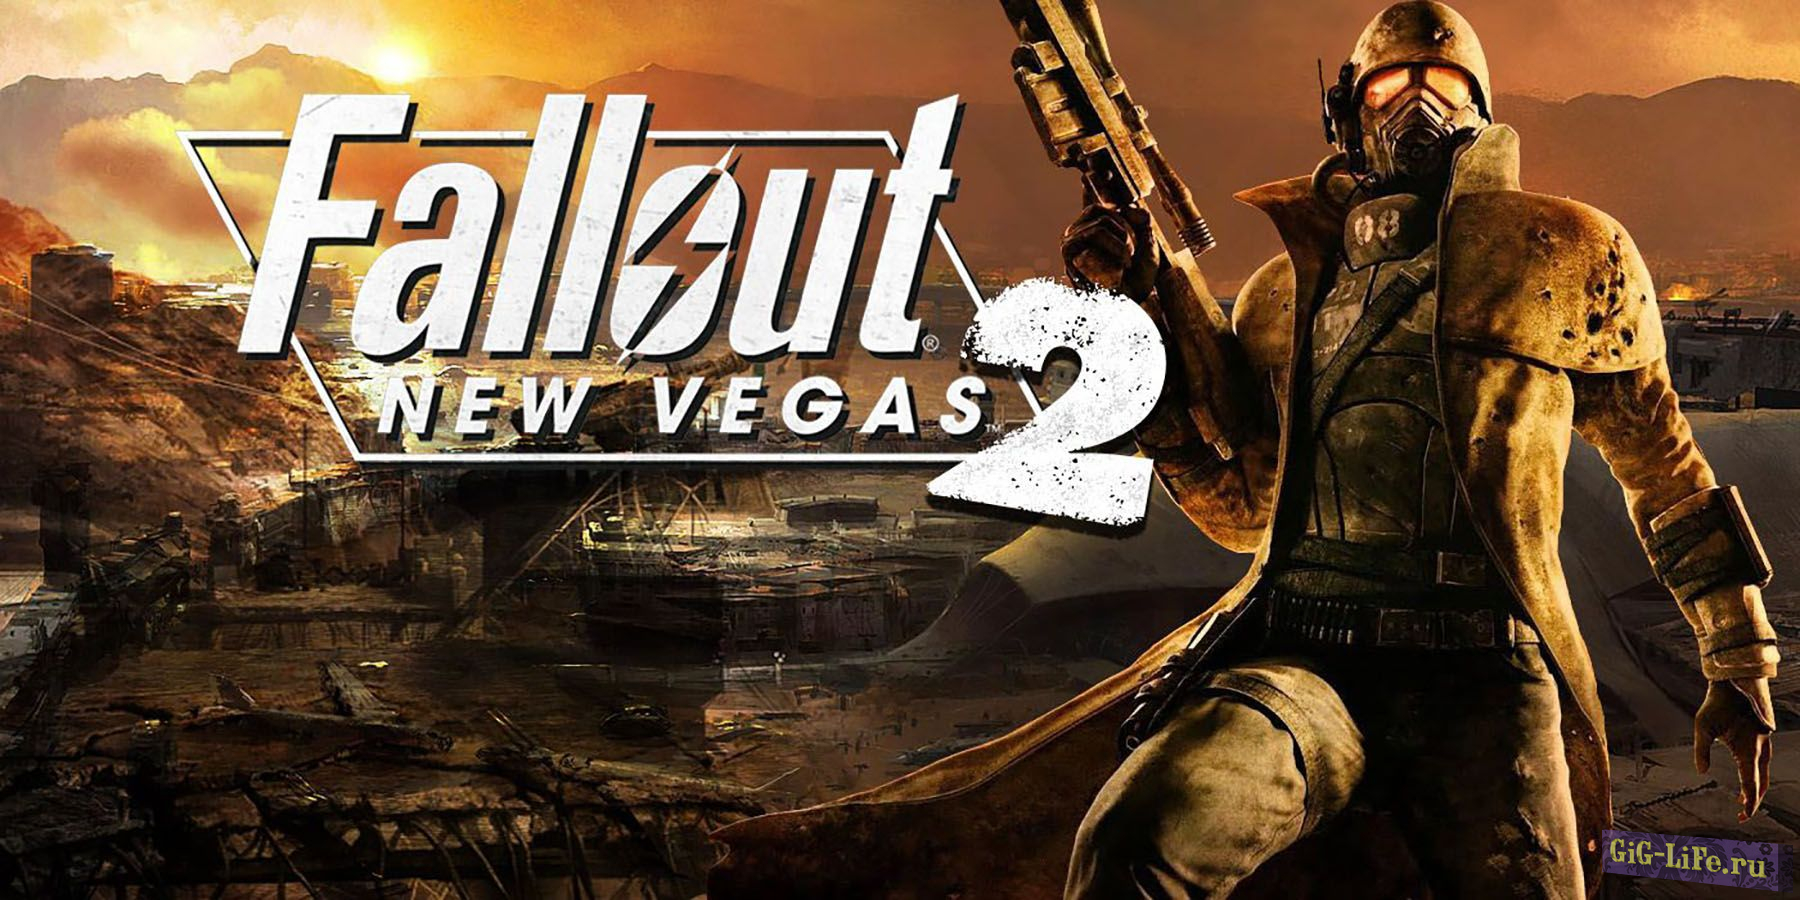 Джефф Грабб рассказал больше о Fallout: New Vegas 2 и в целом о франшизе под крылом Microsoft